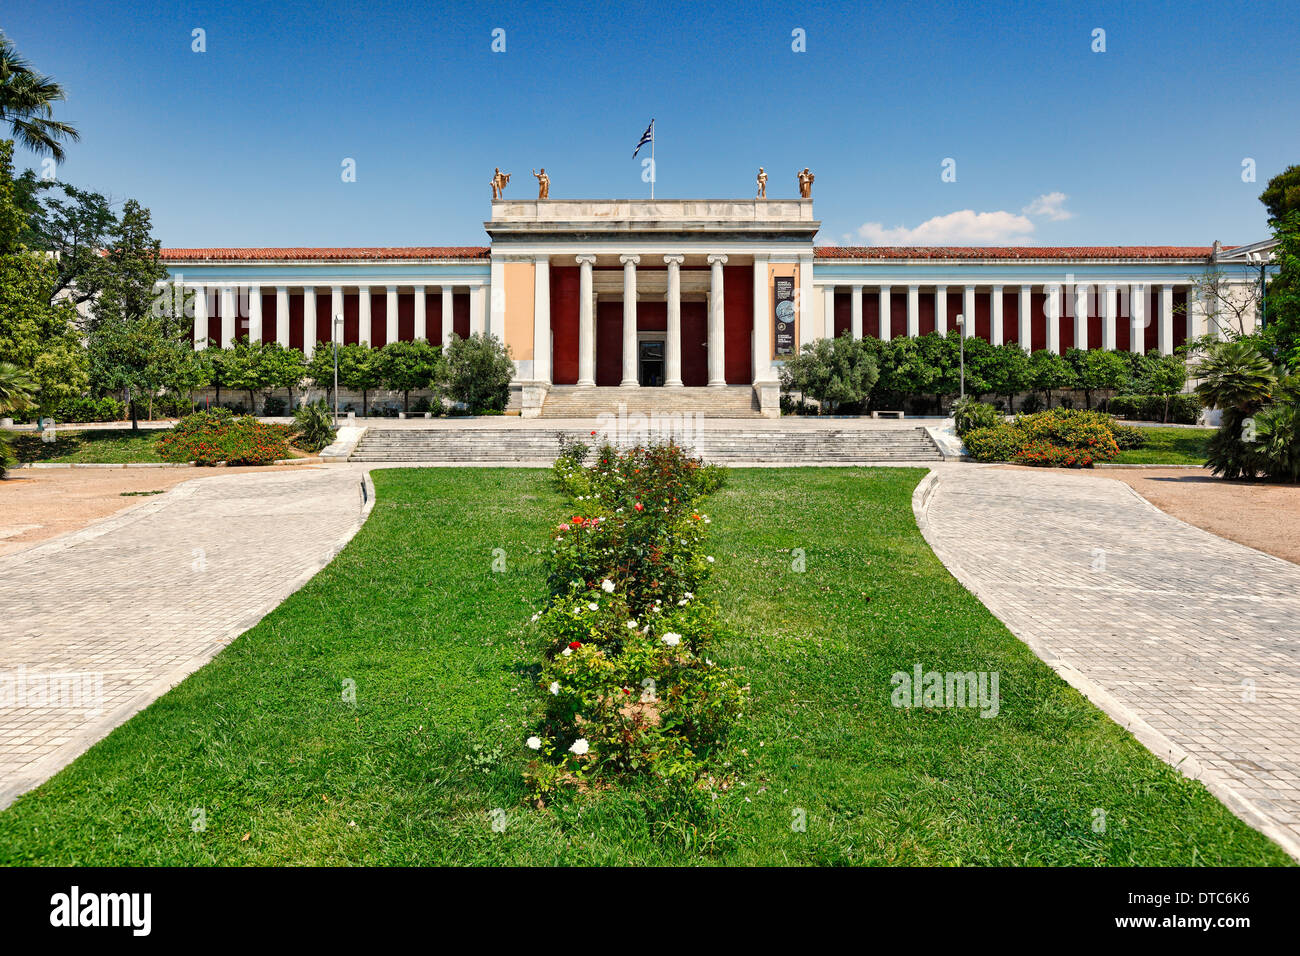 El Museo Arqueológico Nacional de Atenas, Grecia Foto de stock